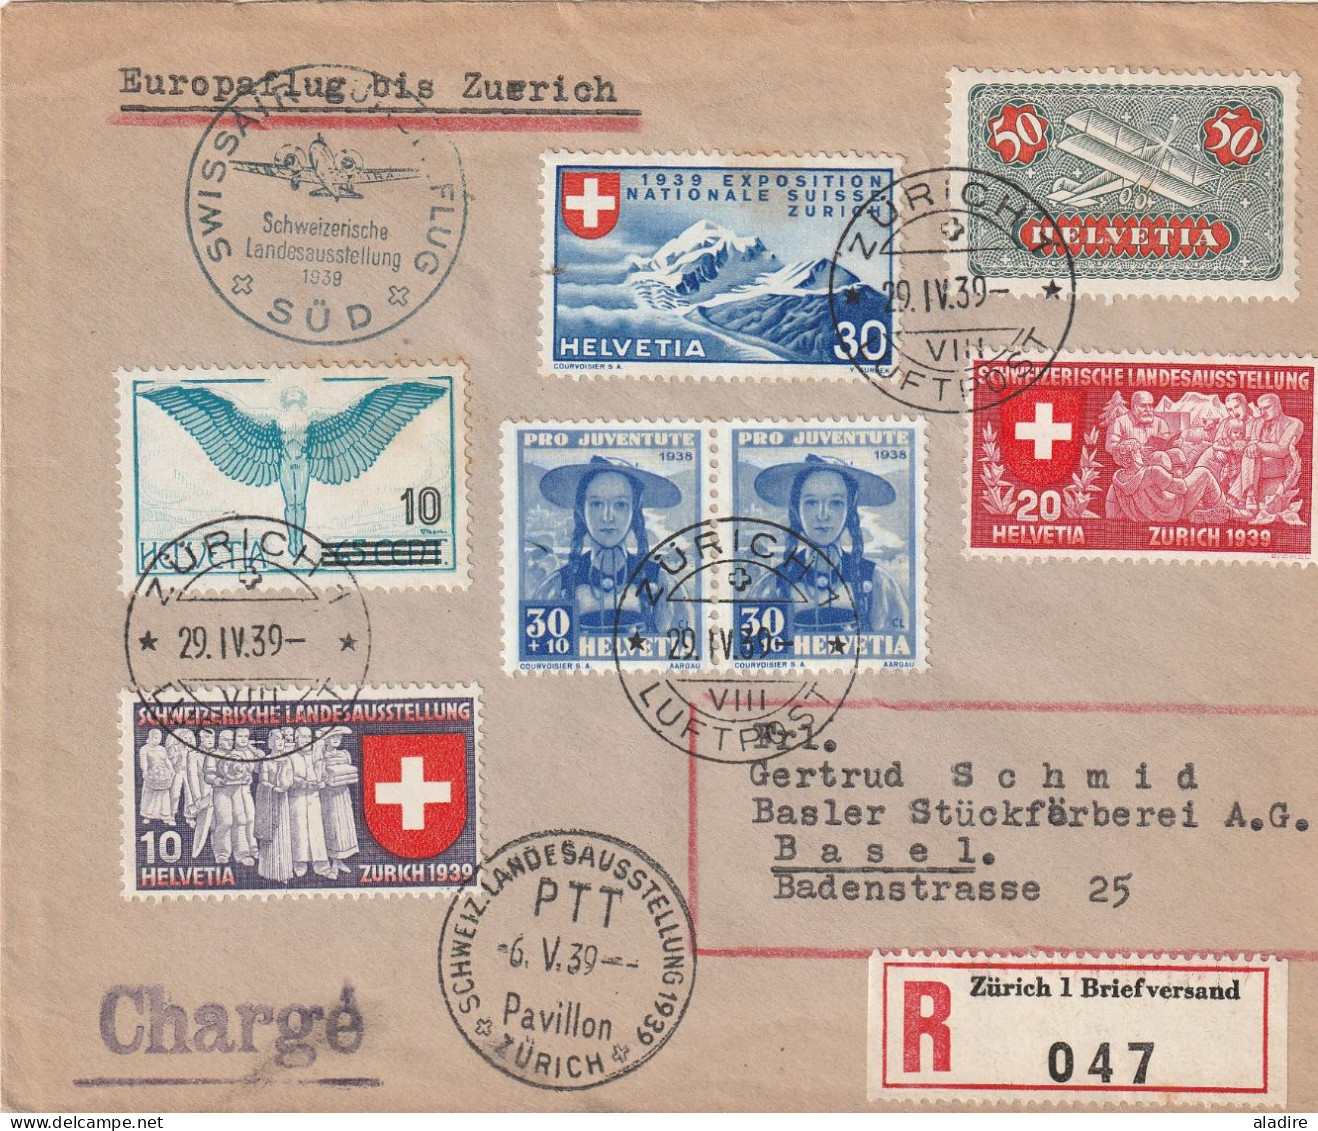 1900 / 2003 - petite collection de 12 CP et enveloppes (recommandé et poste aérienne) de SUISSE - 24 scans